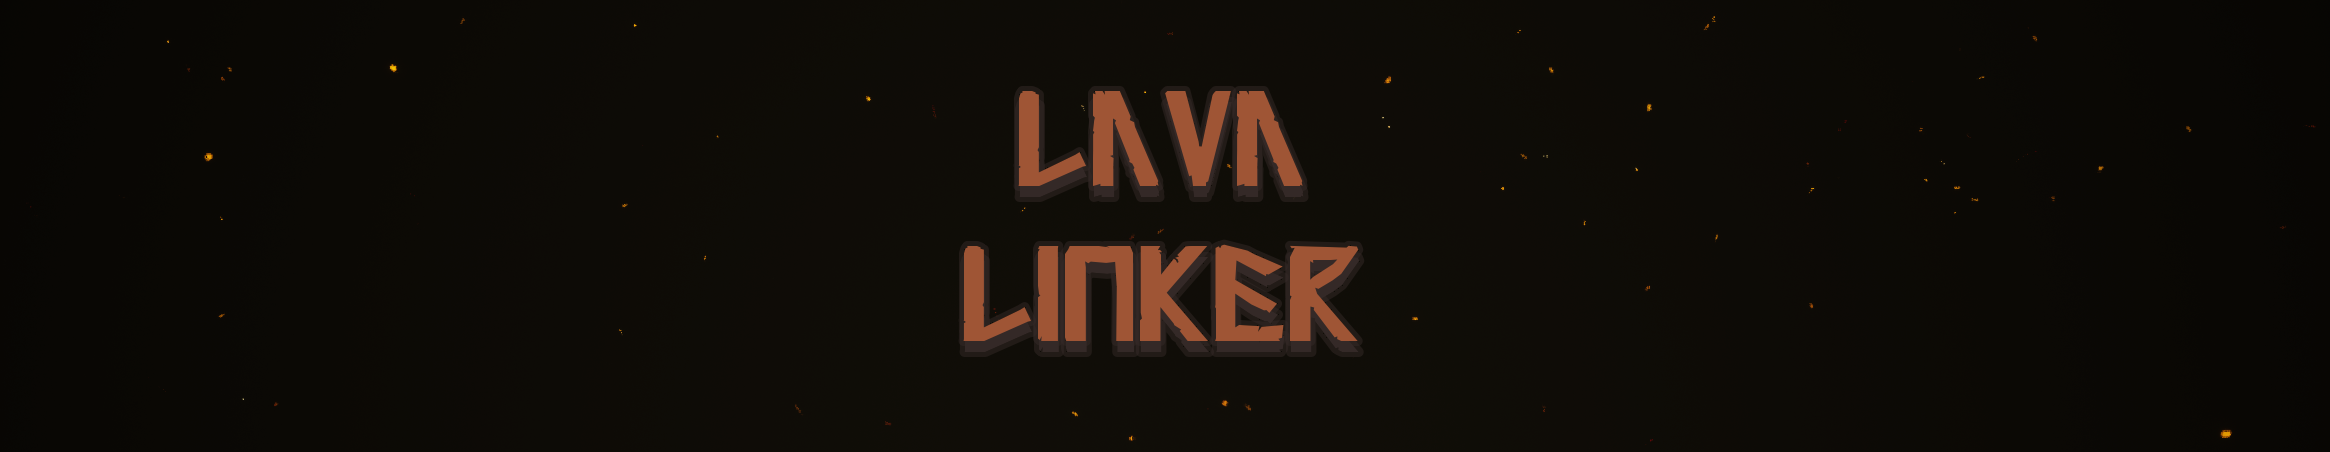 Lava Linker